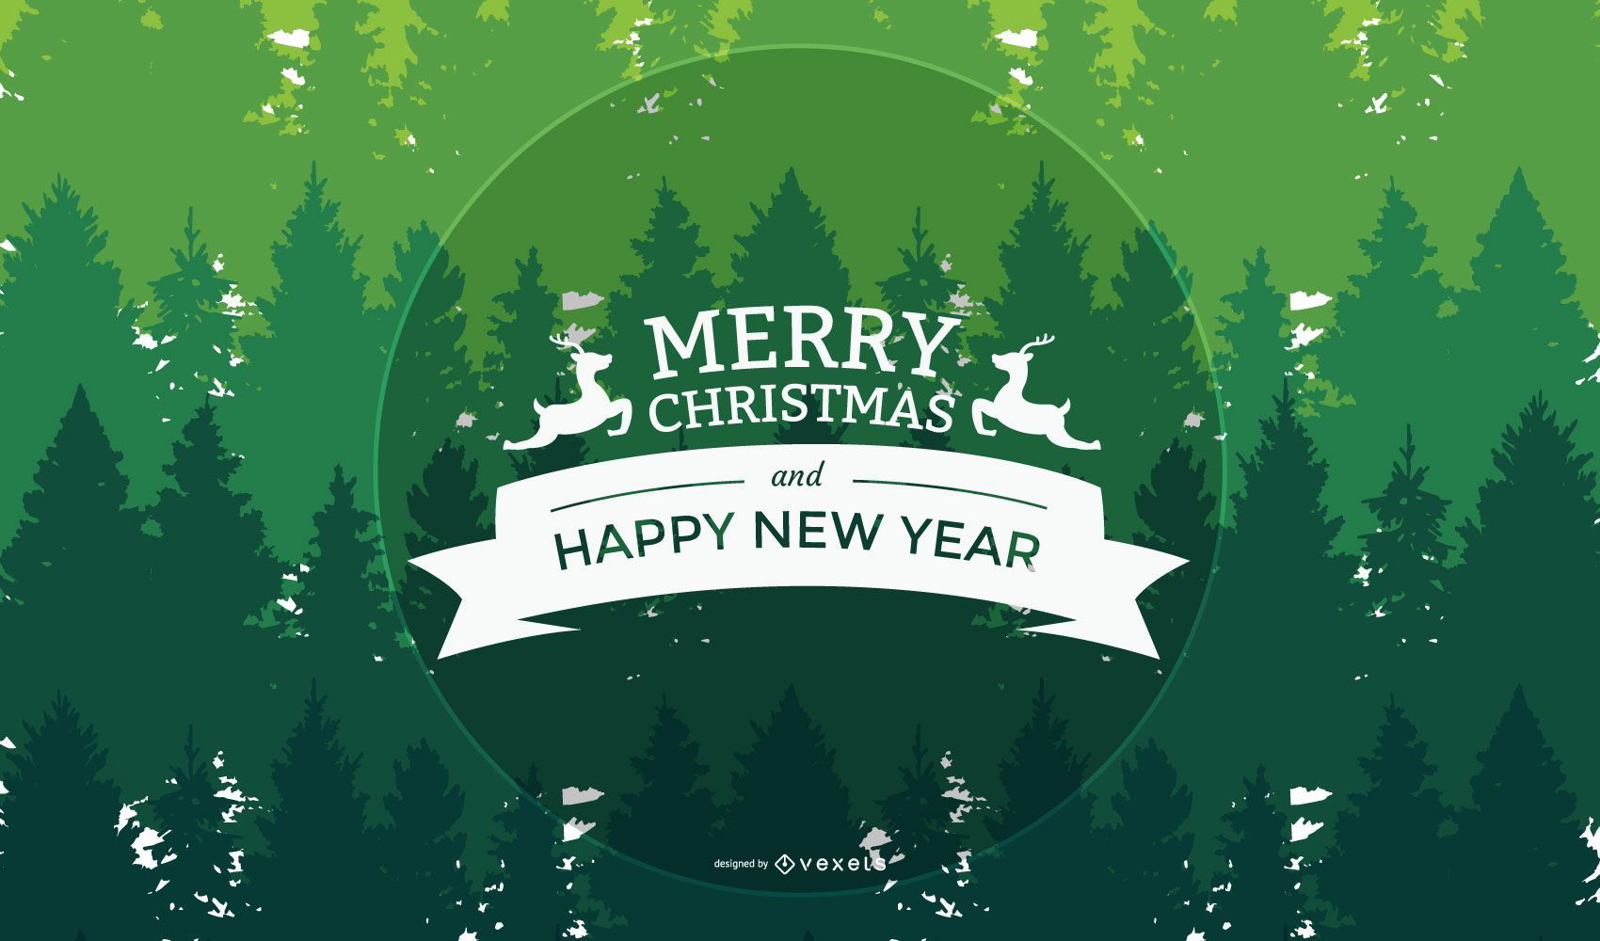 Saludo de Navidad y Año Nuevo en el fondo de árboles verdes